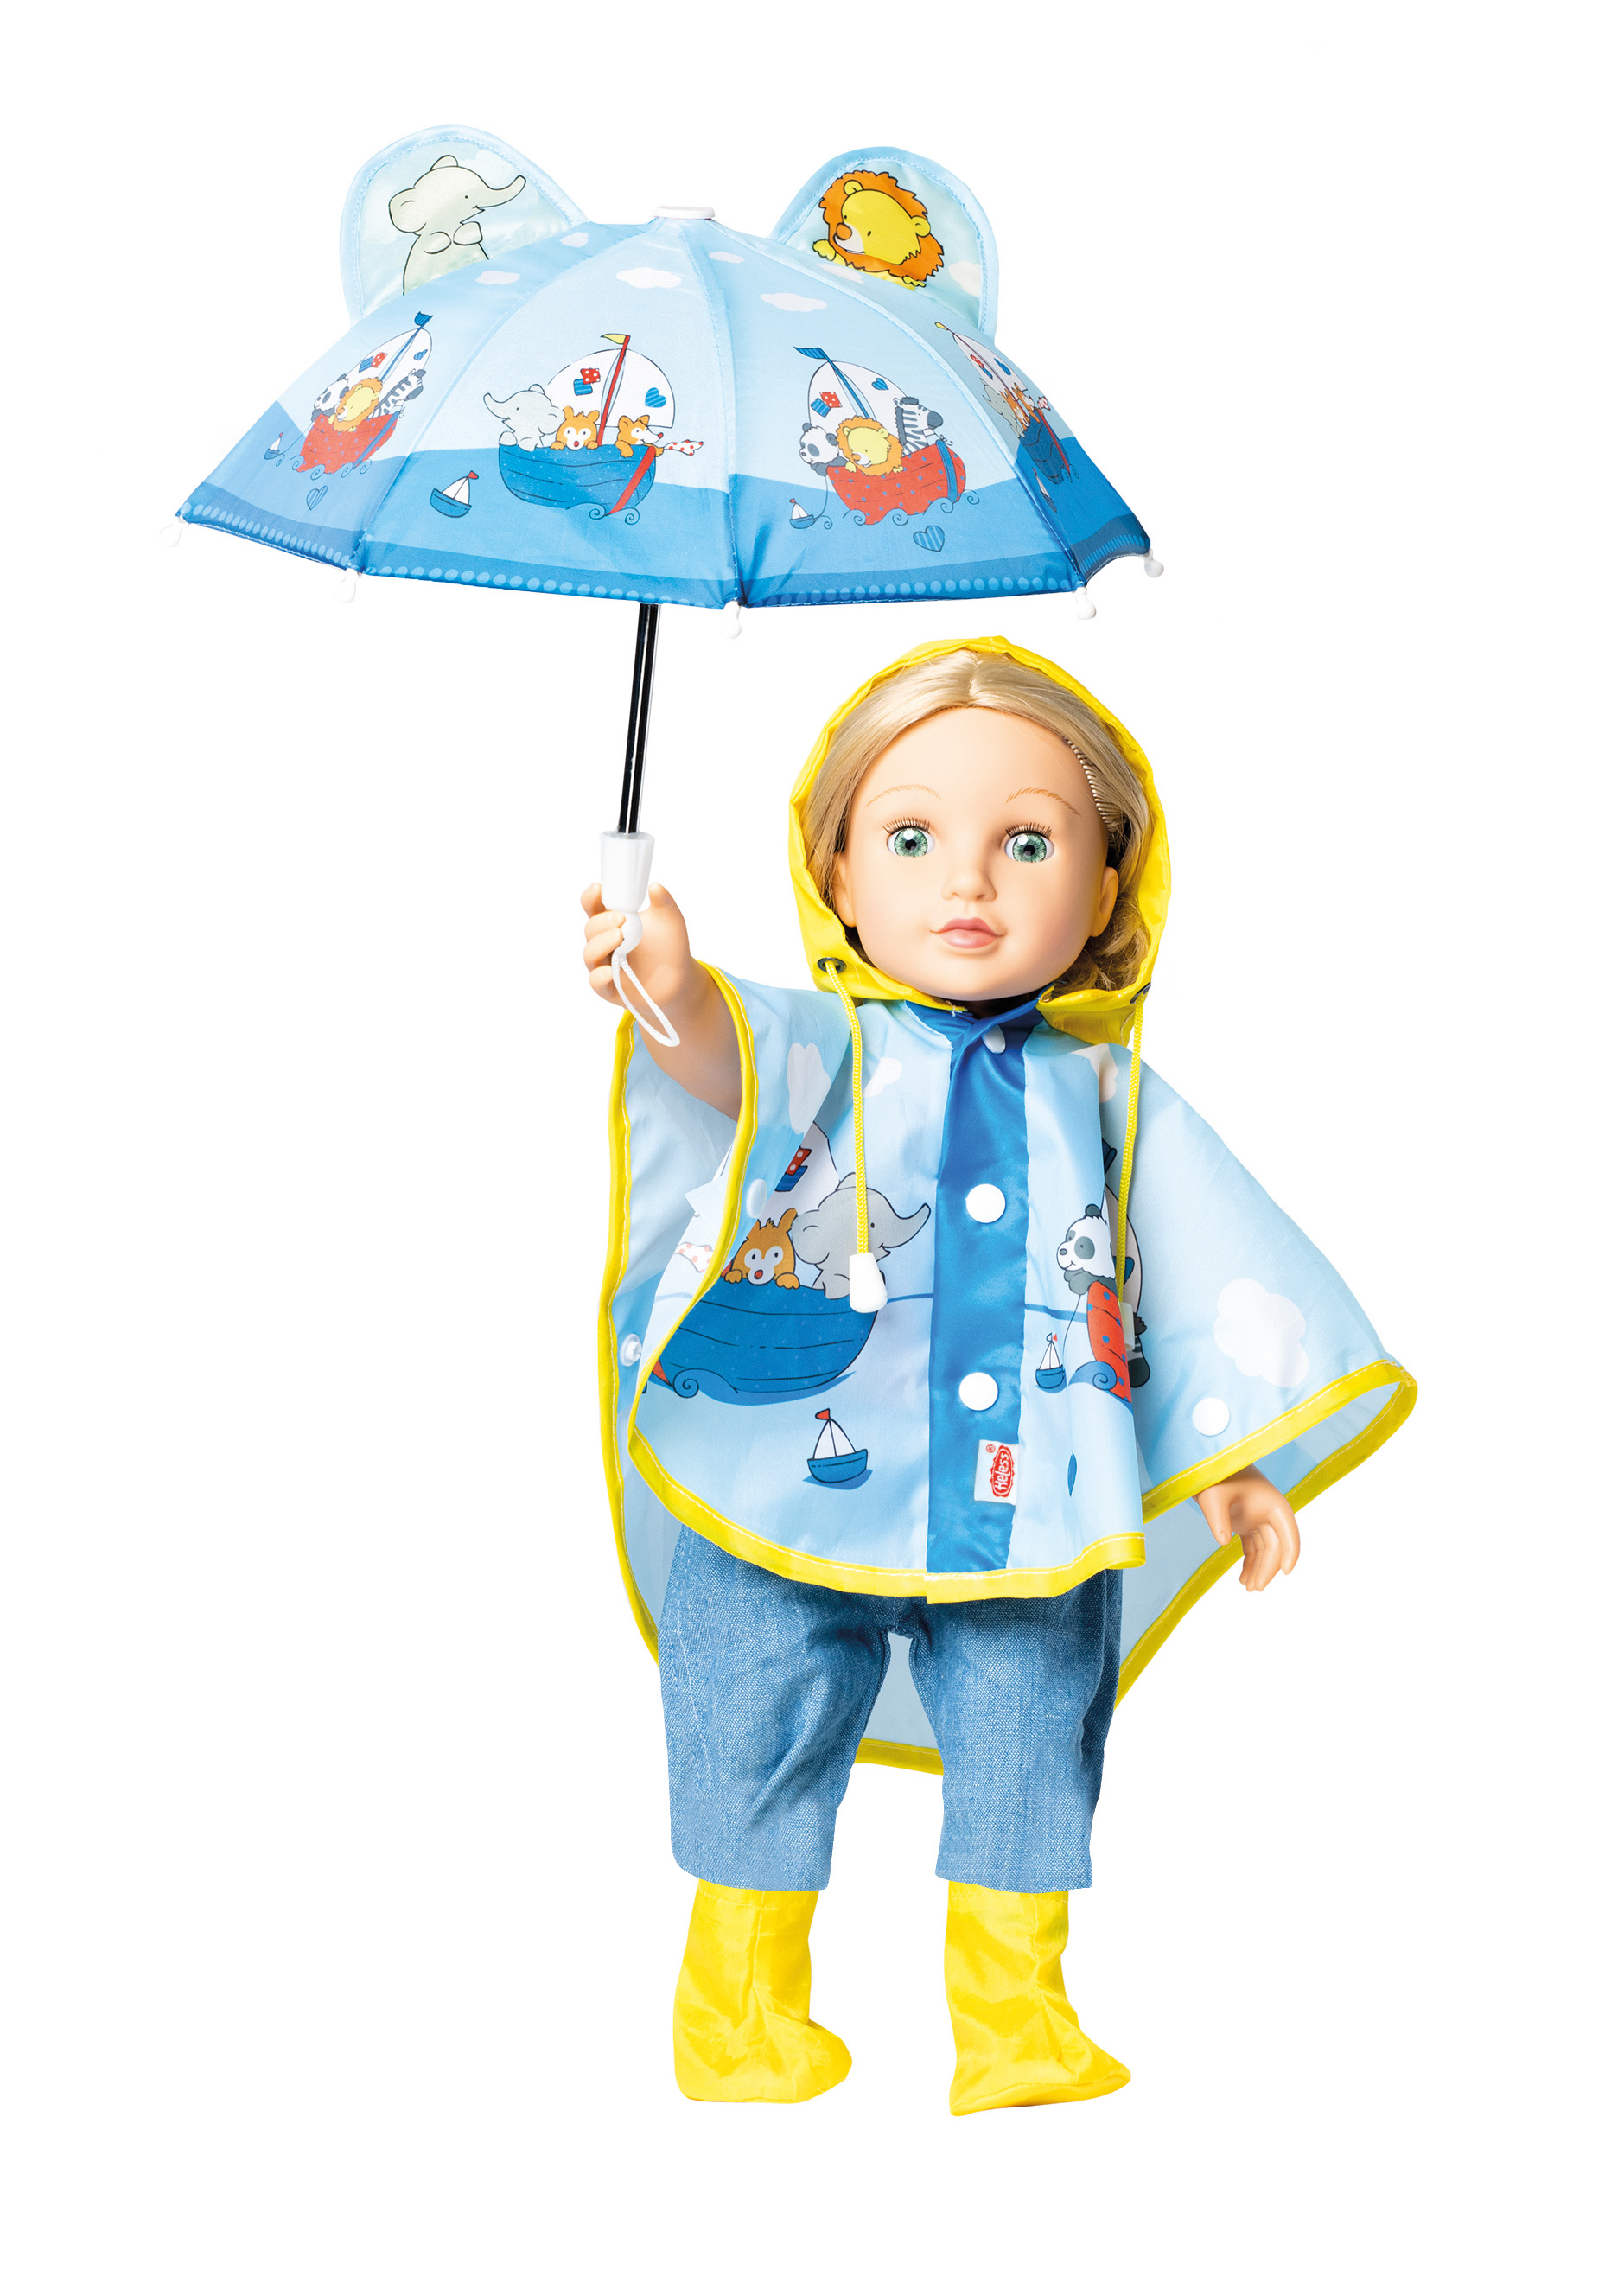 Regencape mit Puppenschirm und Regenstiefeln, Gr. 35-45 cm